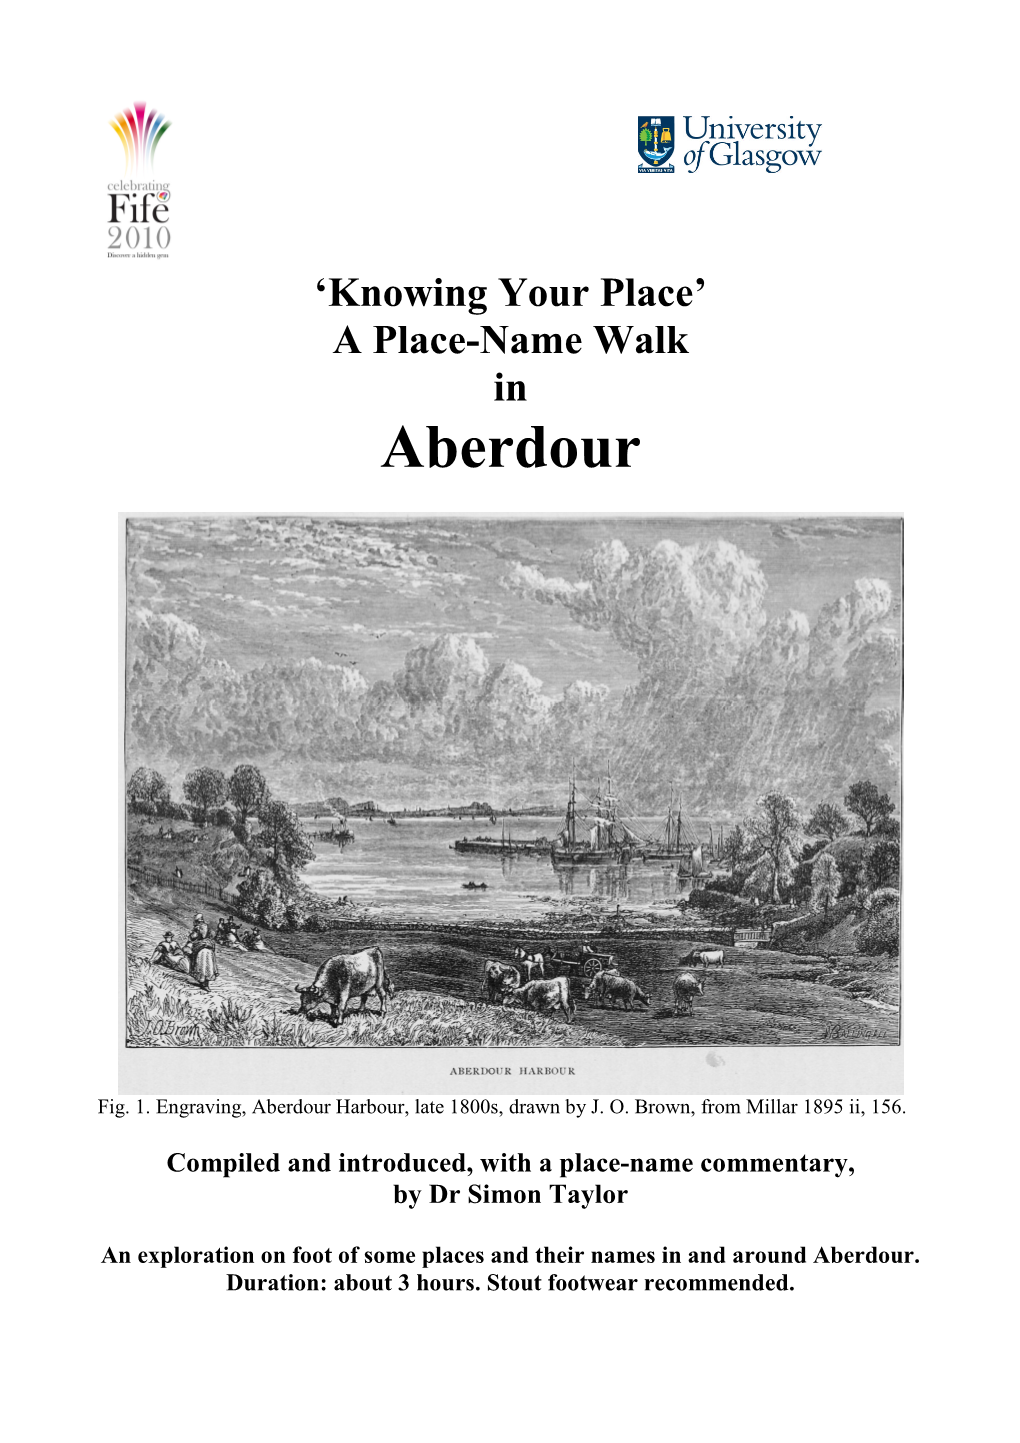 Aberdour, Fife